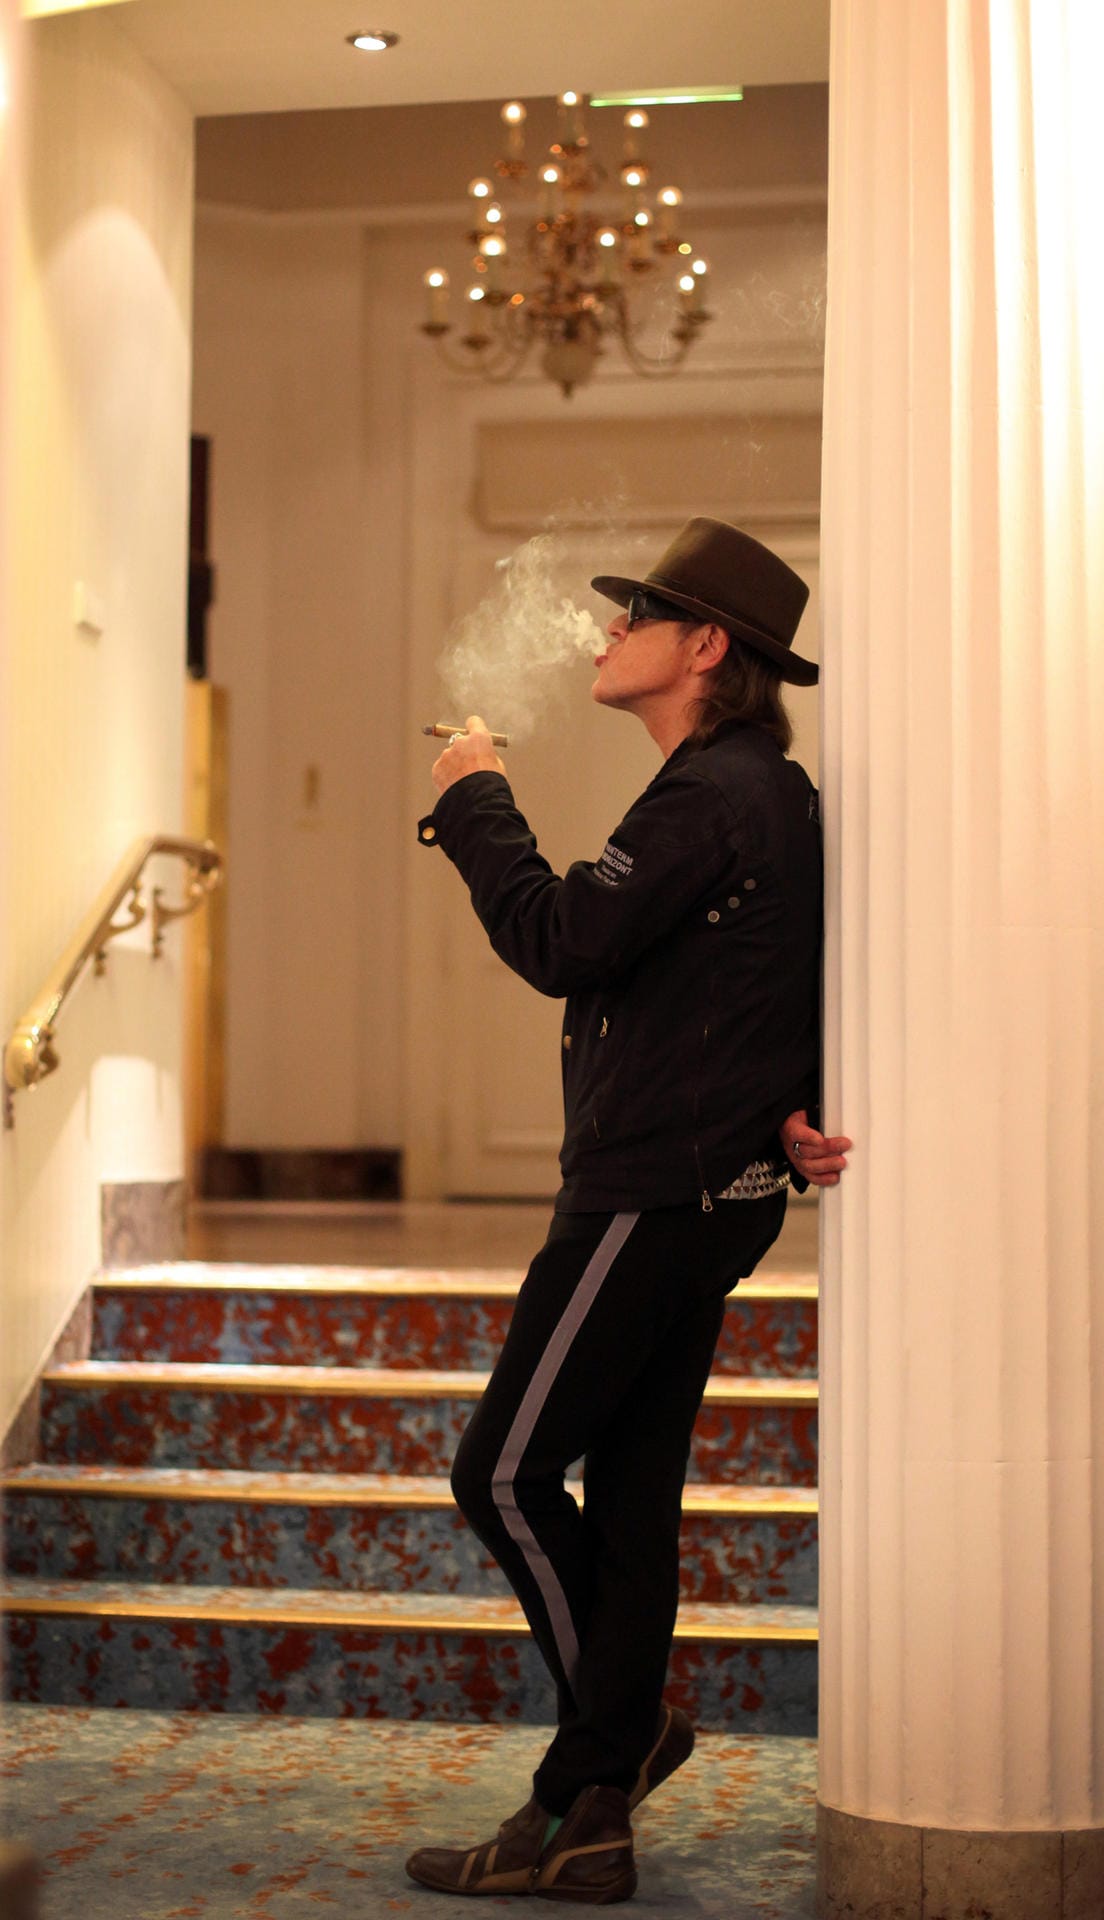 Angesichts der Coronavirus-Pandemie verließ der Sänger diesen Wohnsitz fürs erste. Er ist hier im Foyer des Hotels zu sehen.